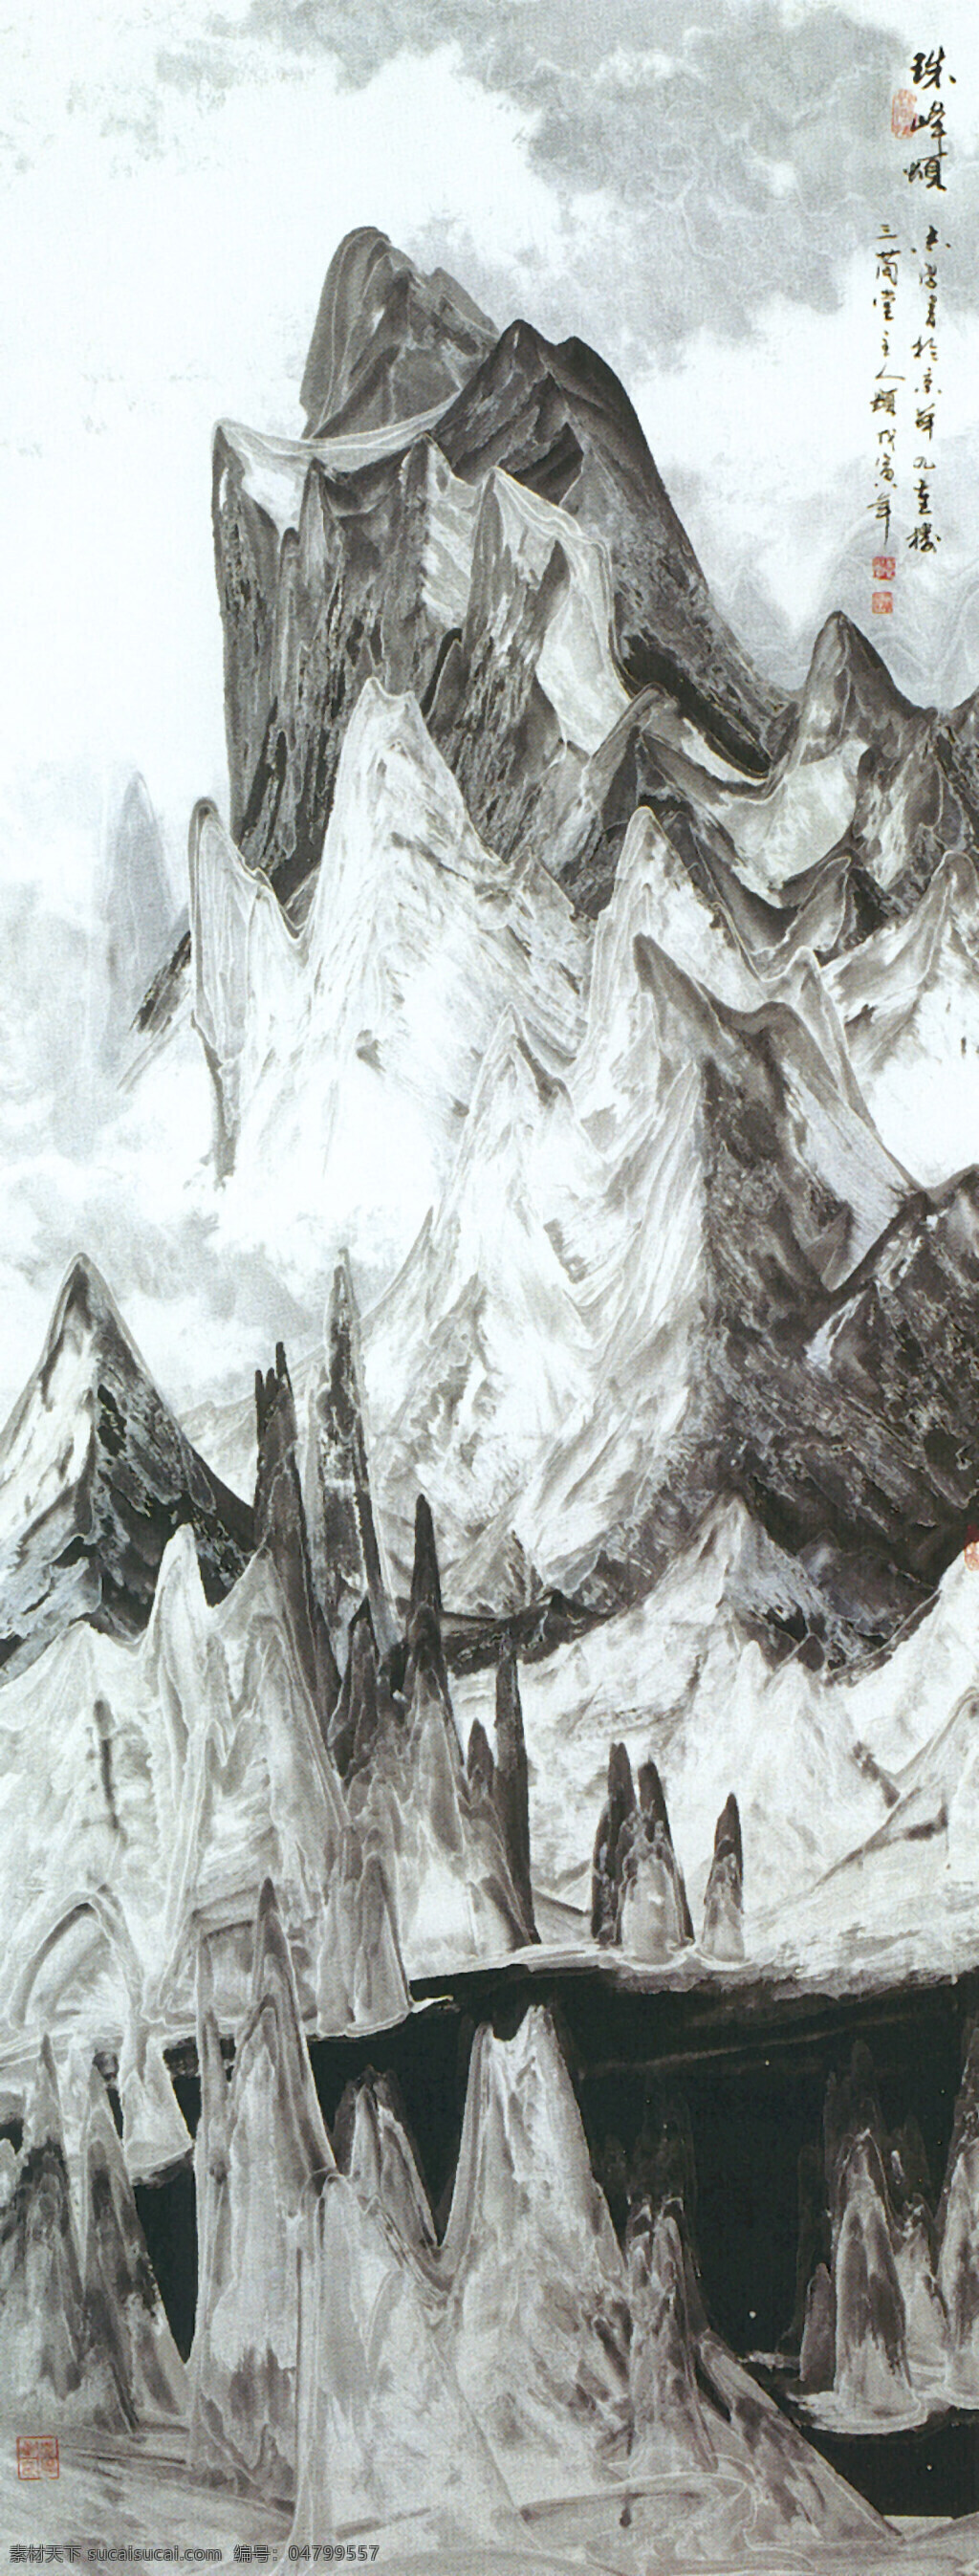 珠峰颂图 文化艺术 绘画书法 山水名画 设计图库 301